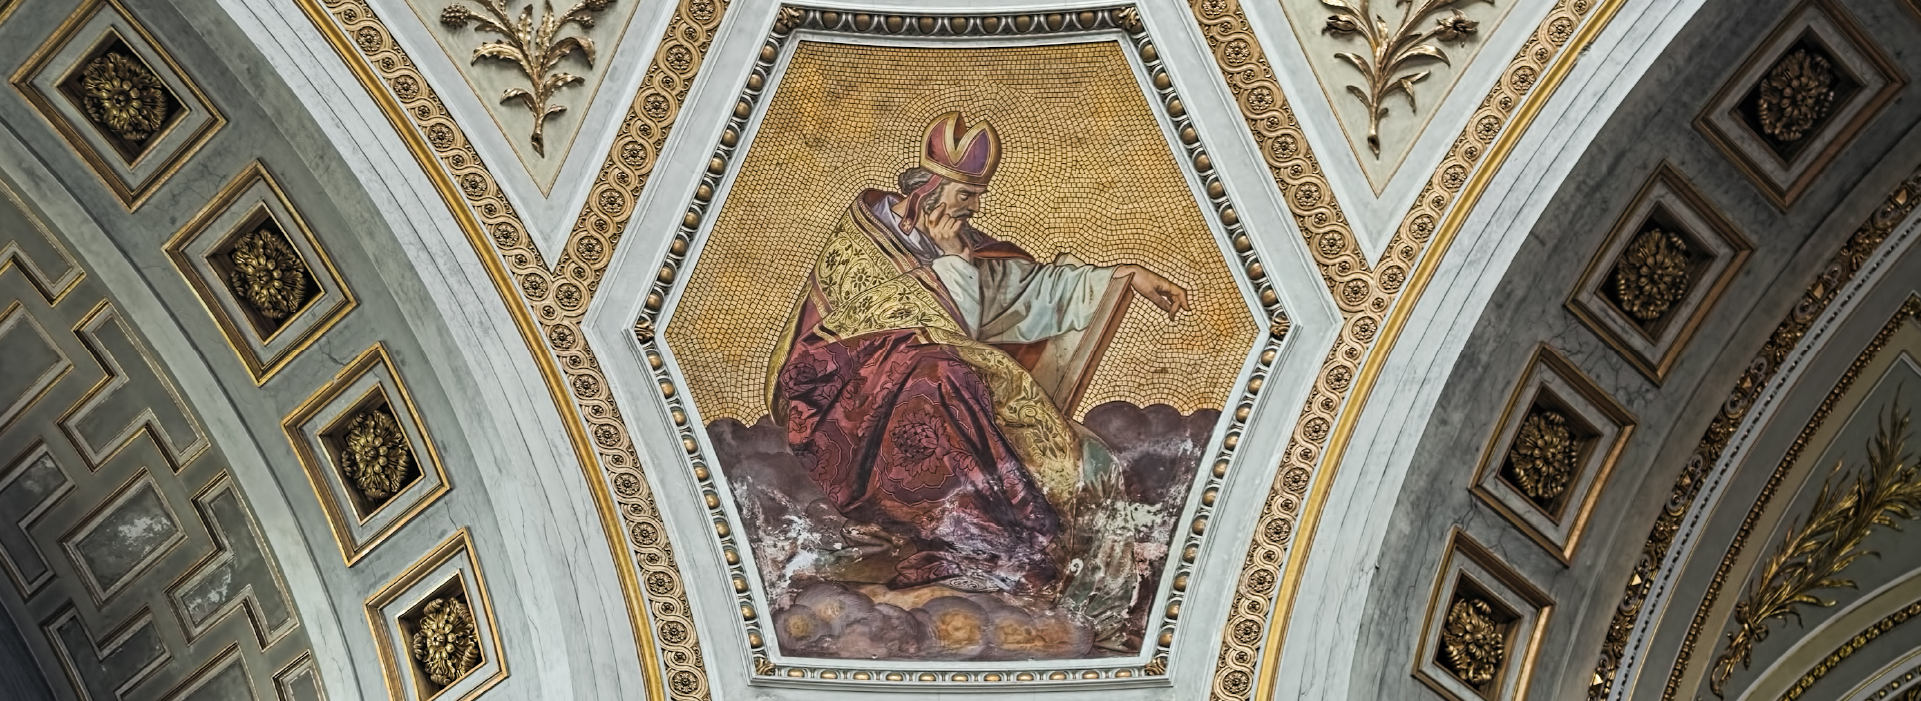 Pintura de Santo Agostinhona na Basílica de Esztergom, Hungria